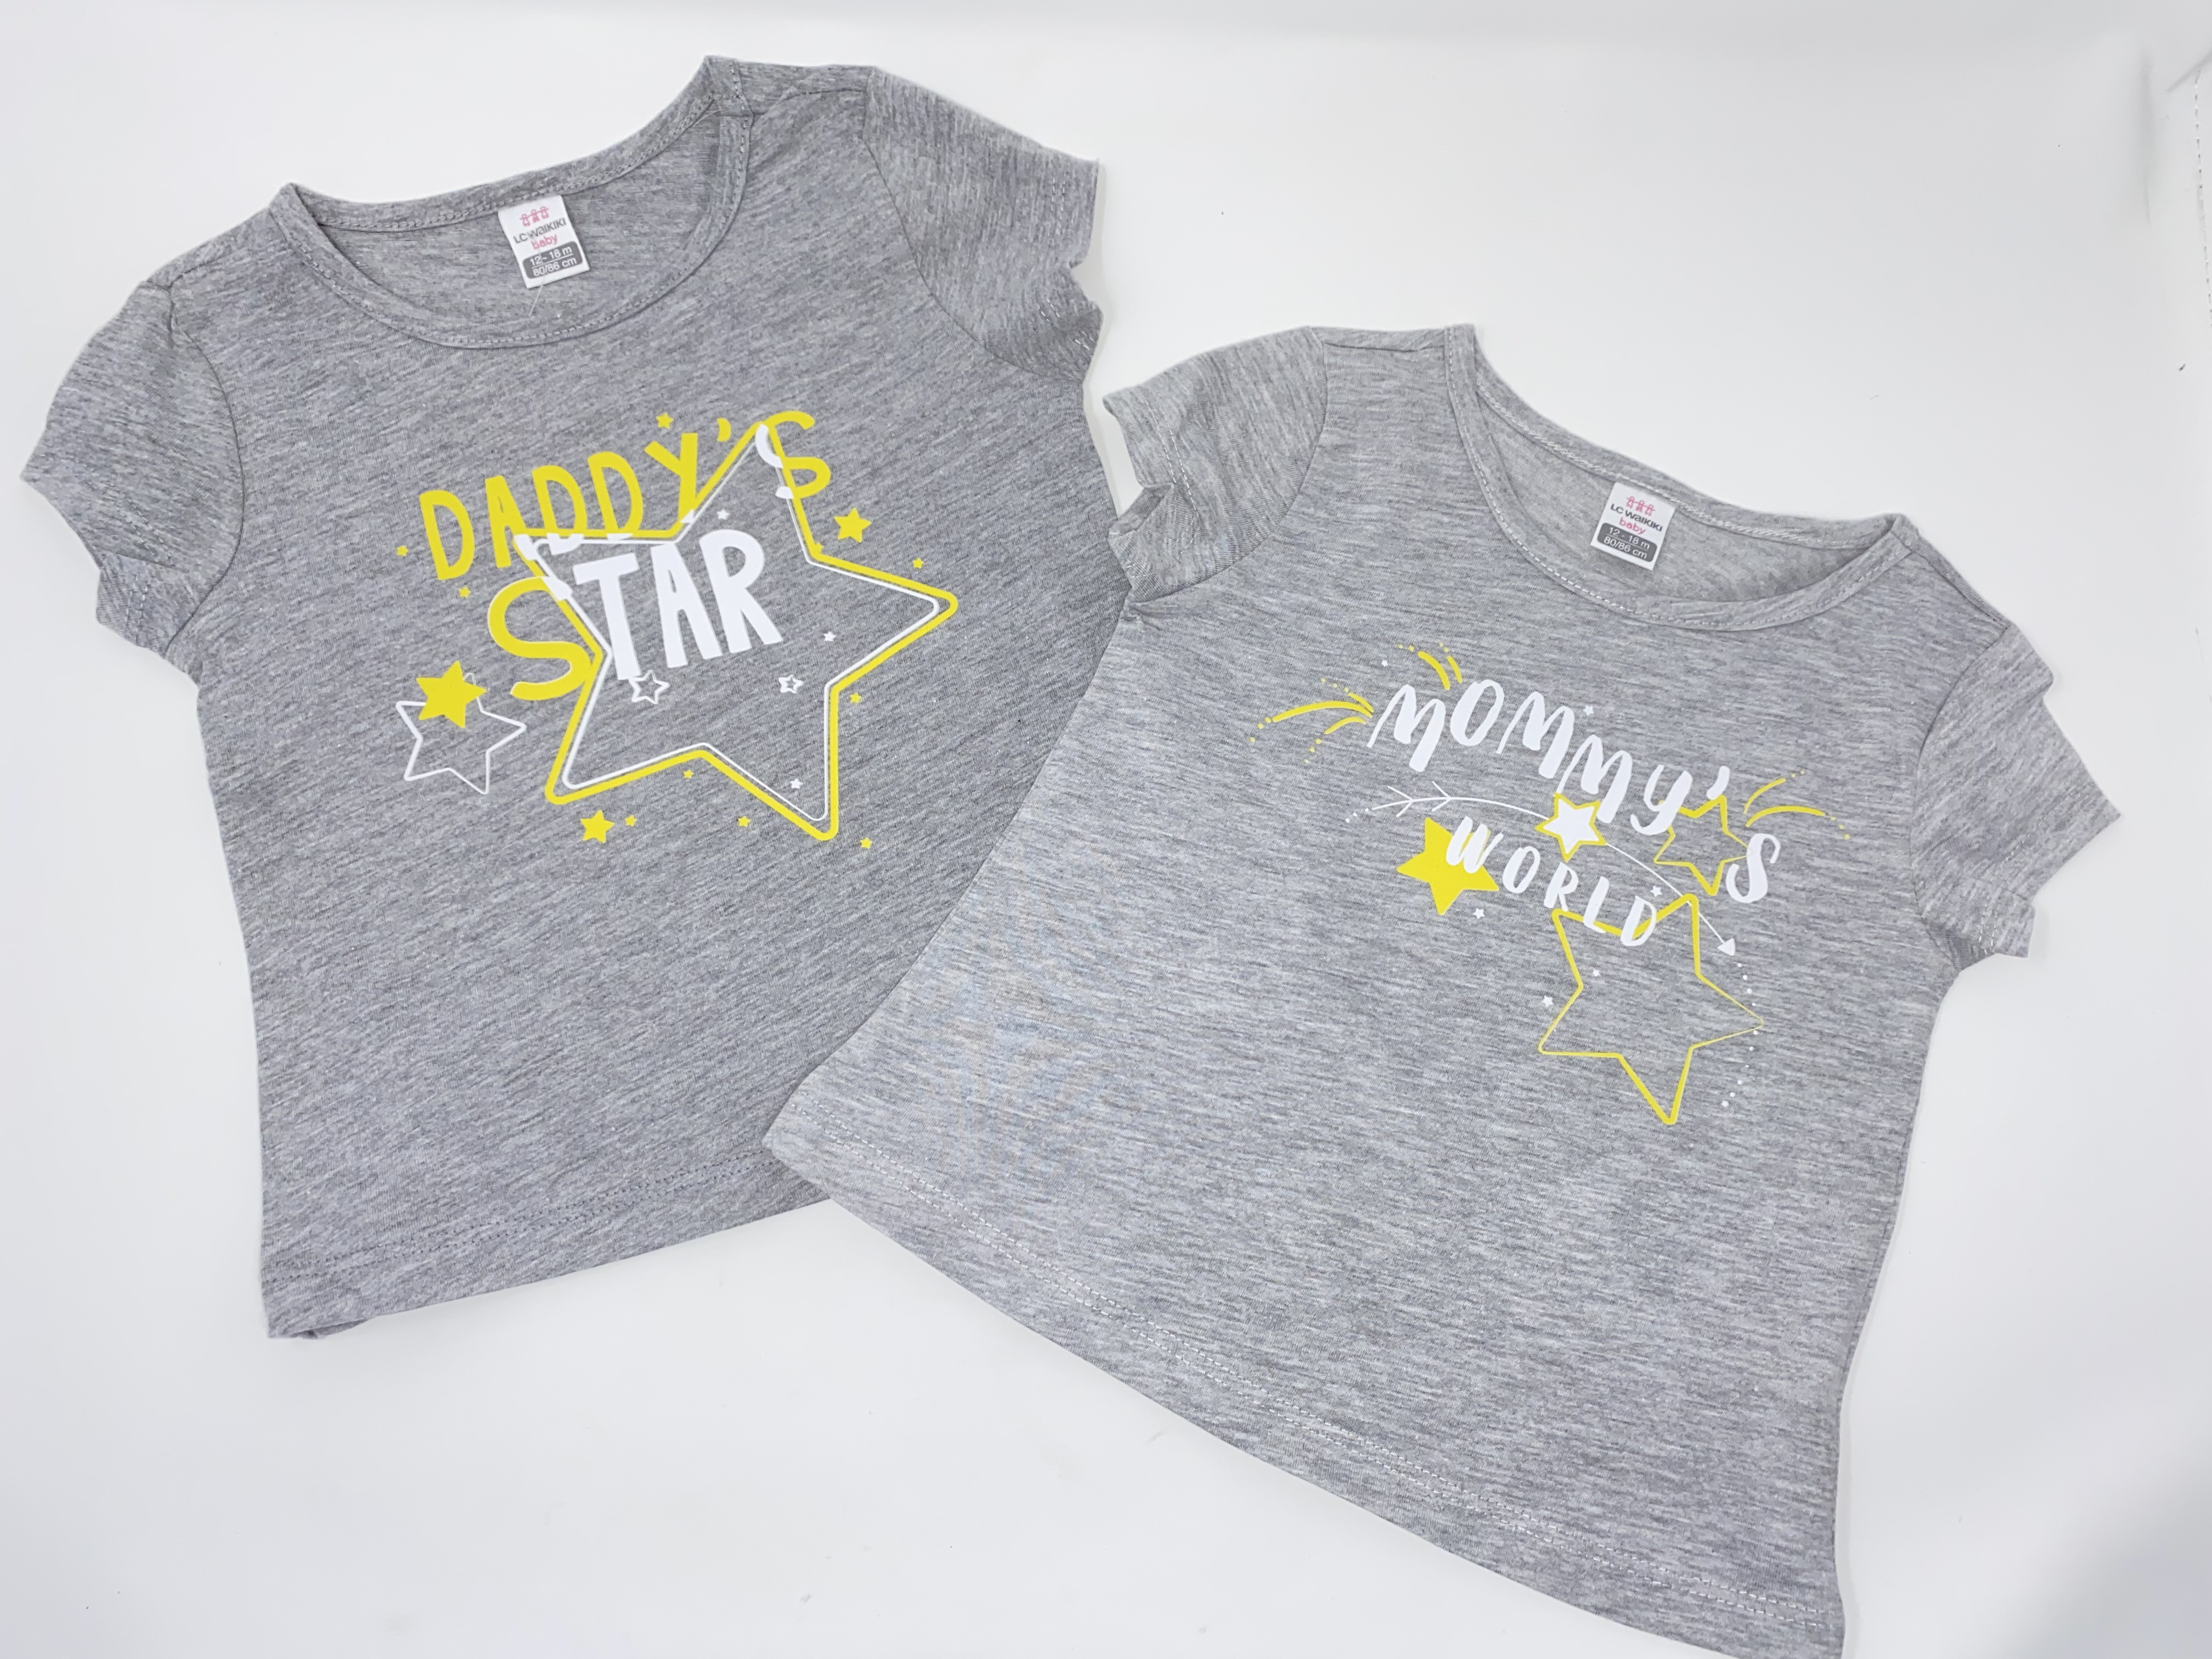 2 x Mädchen T-Shirt Sterne Stars grau meliert